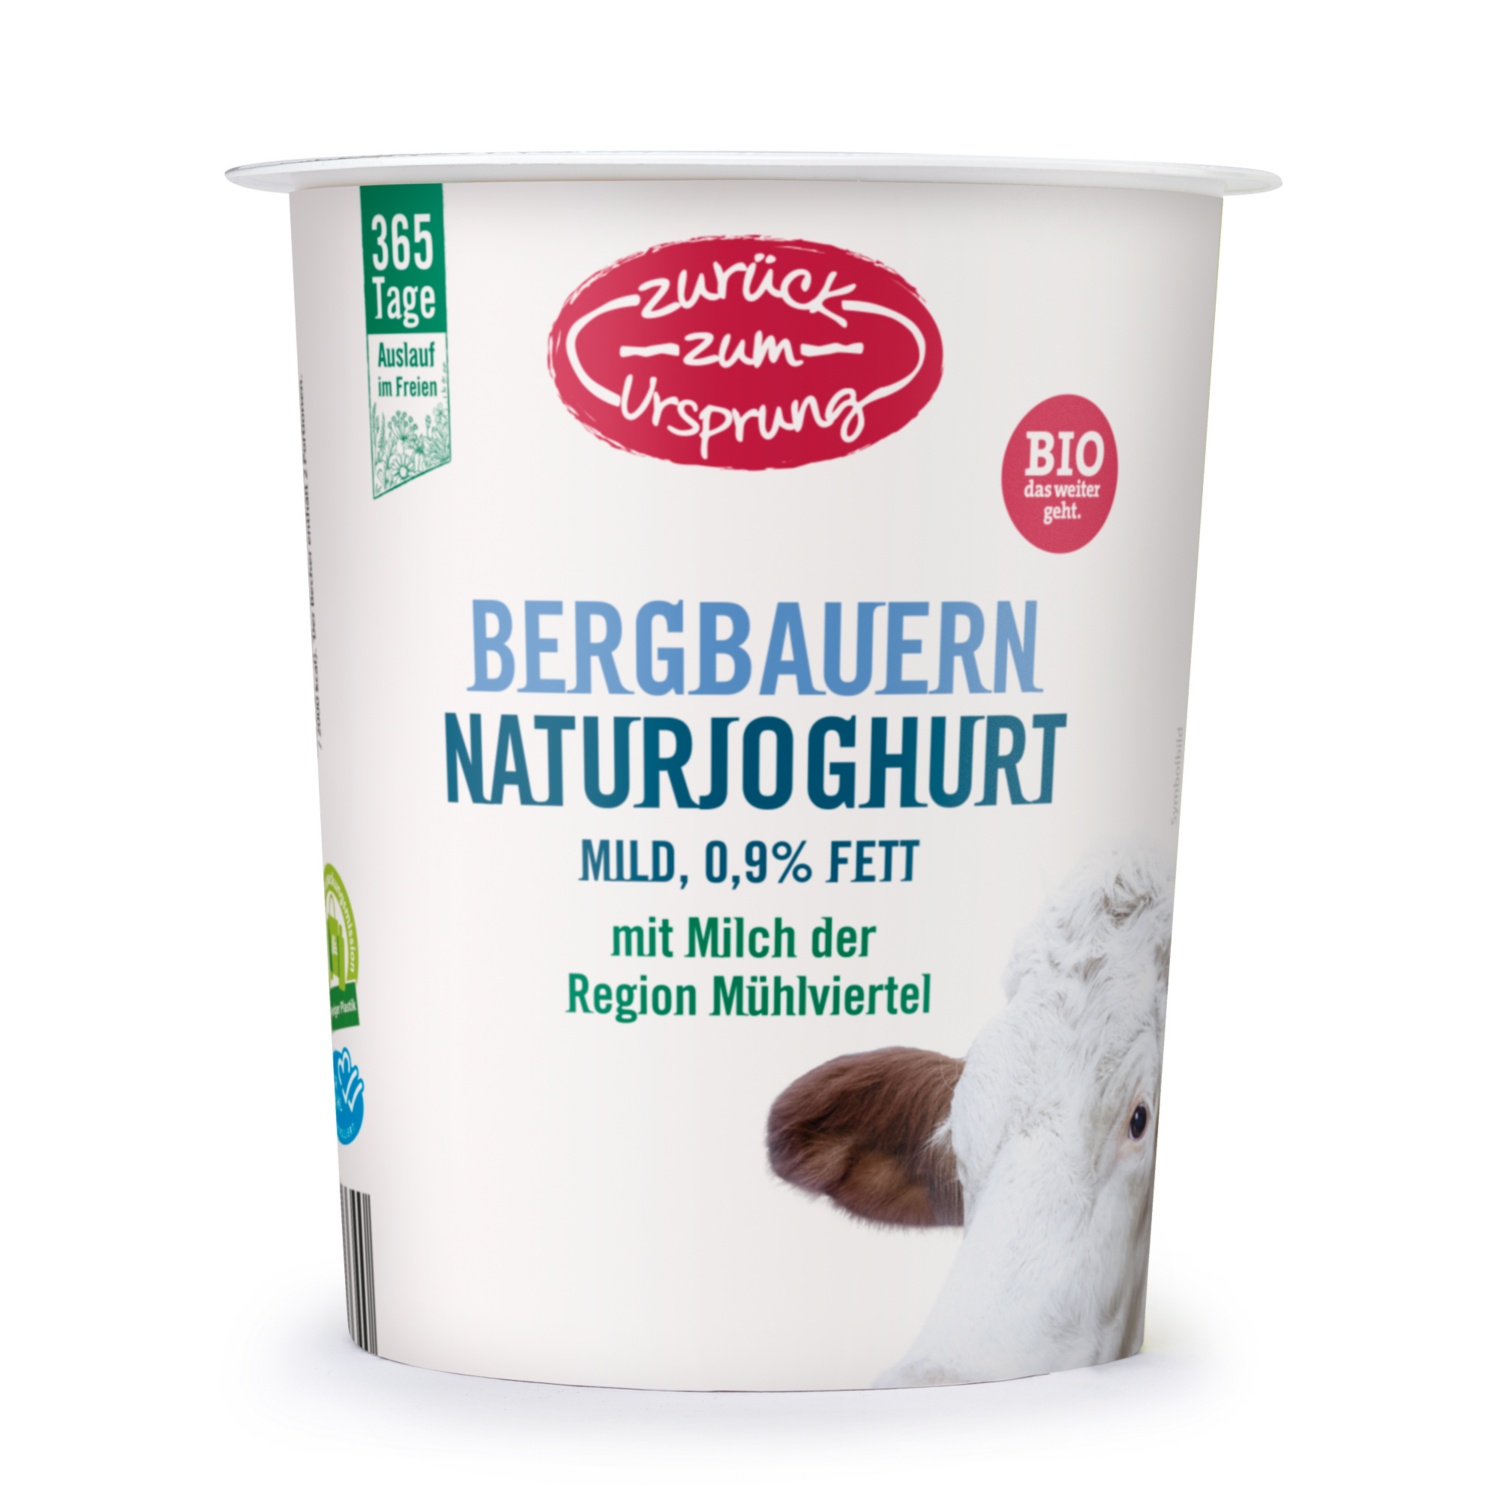 ZURÜCK ZUM URSPRUNG BIO-Bergbauern Naturjoghurt 0,9% Fett